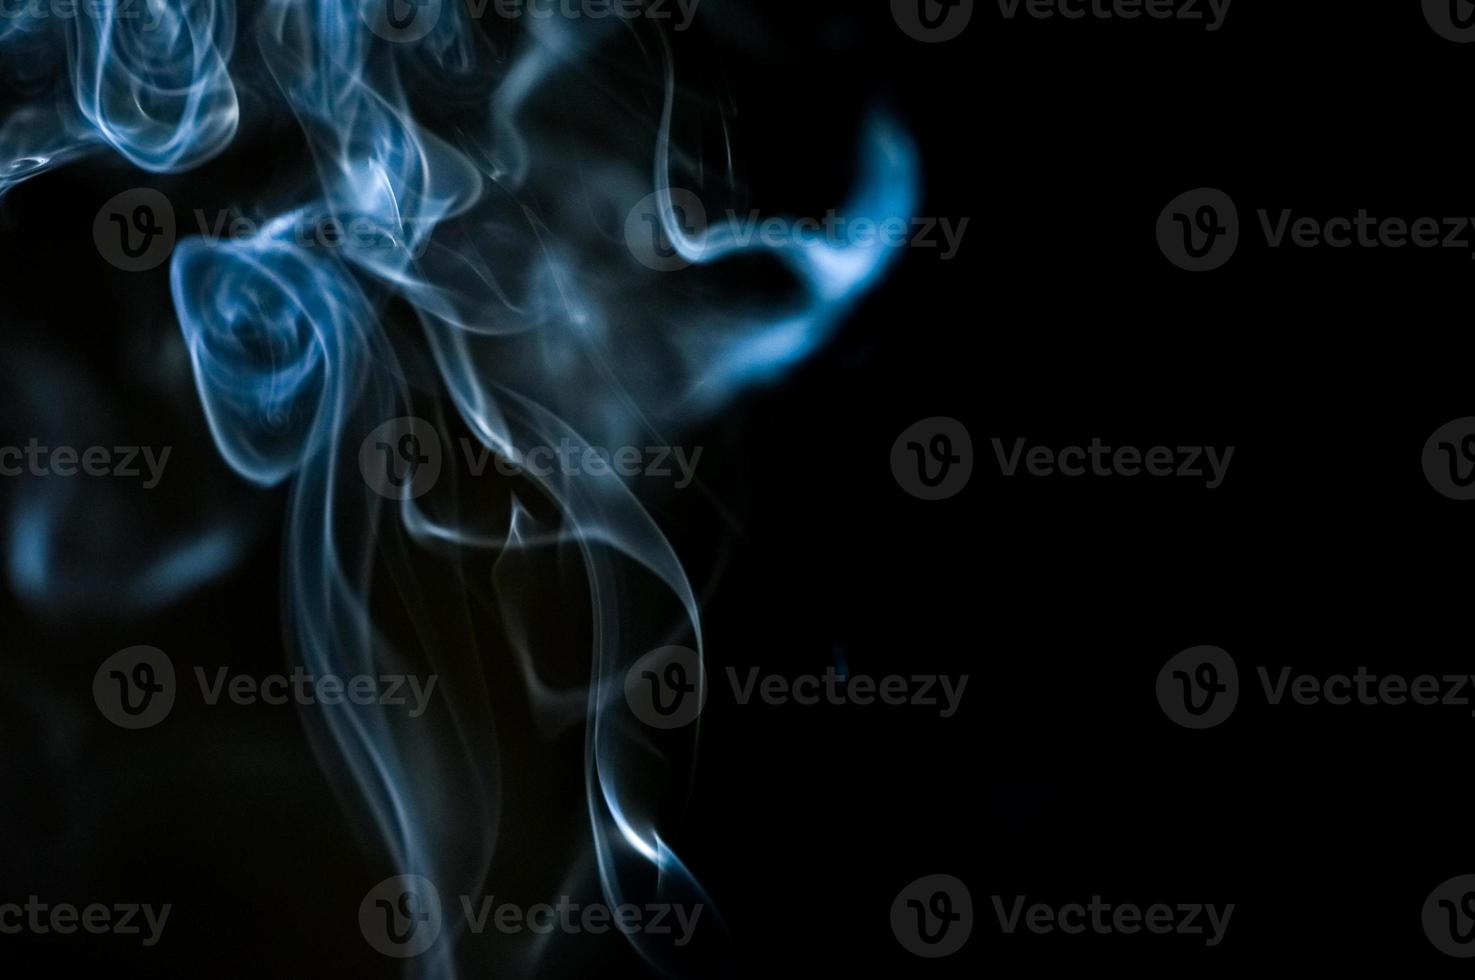 fondo abstracto de humo o niebla sobre fondo negro foto